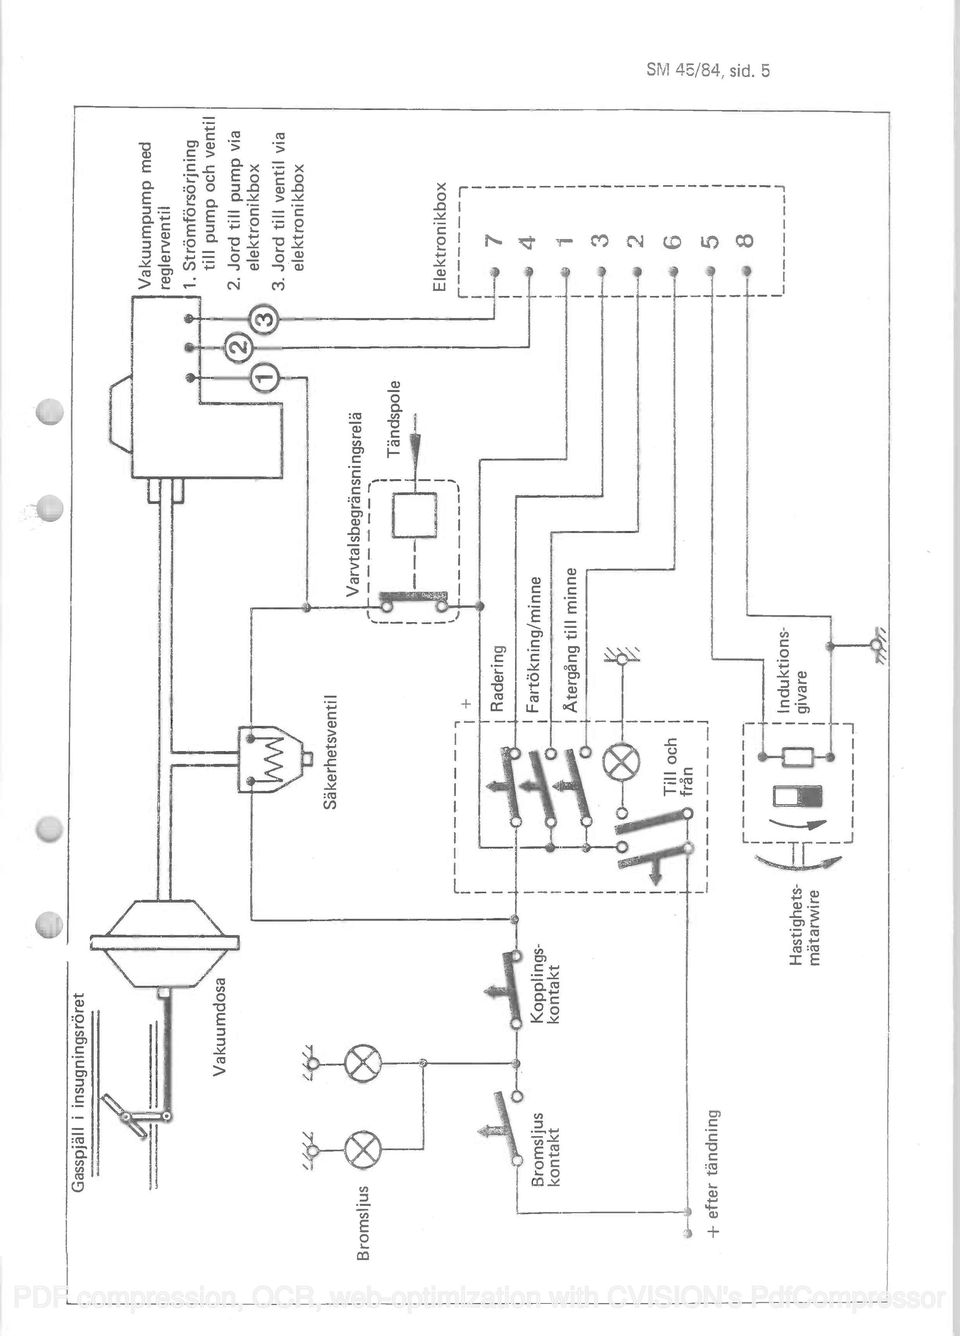 Strämförsörjning till pump och ventil 2. Jord till pump via elektronikbox 3.